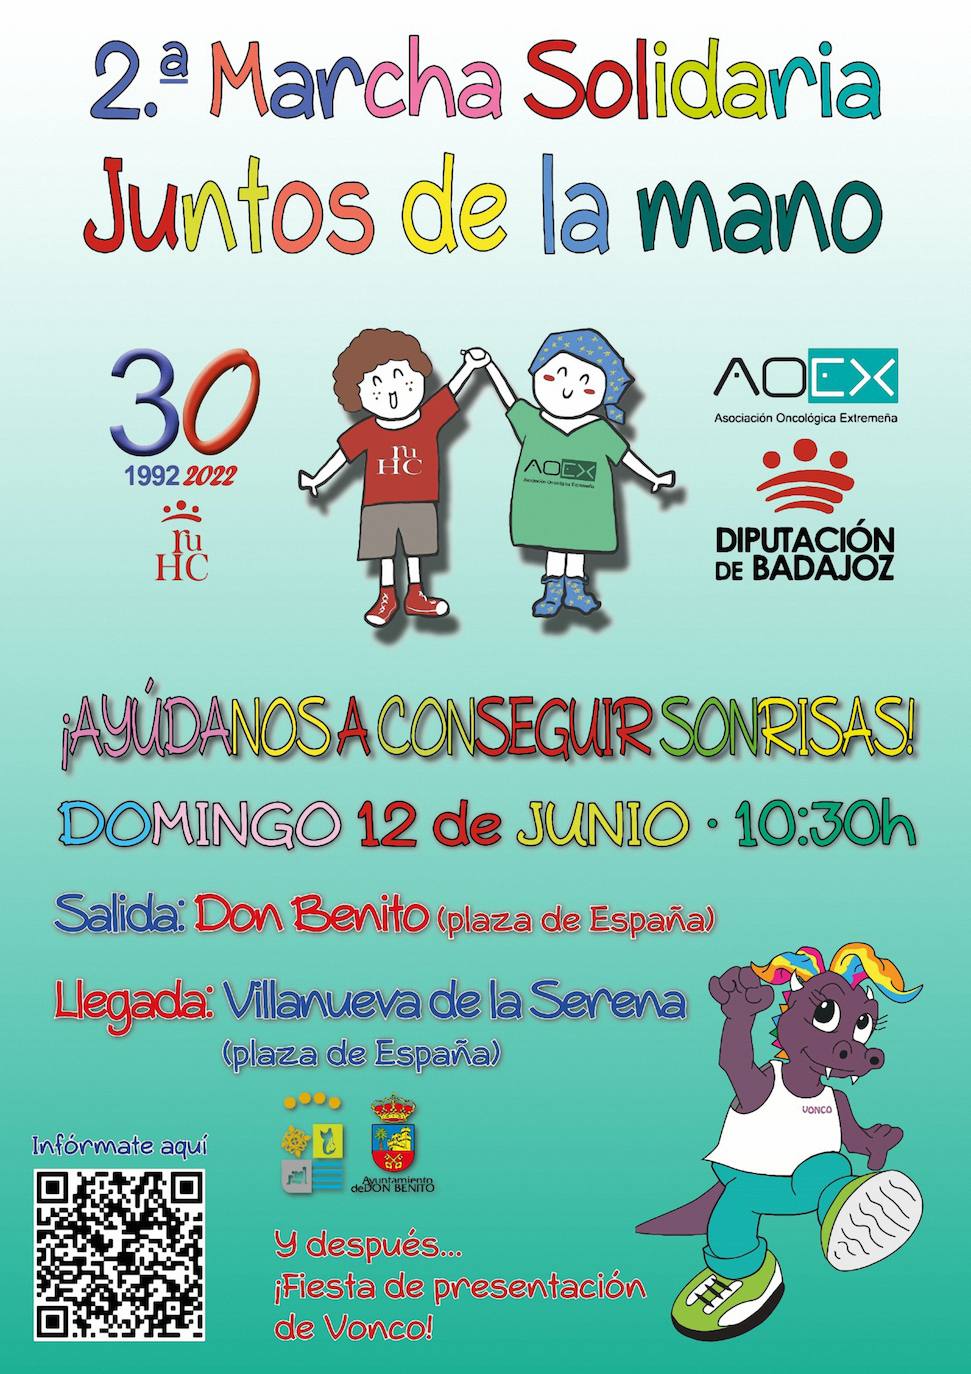 Cartel promocional de la marcha solidaria que tendrá lugar en Don Benito y Villanueva de la Serena. 